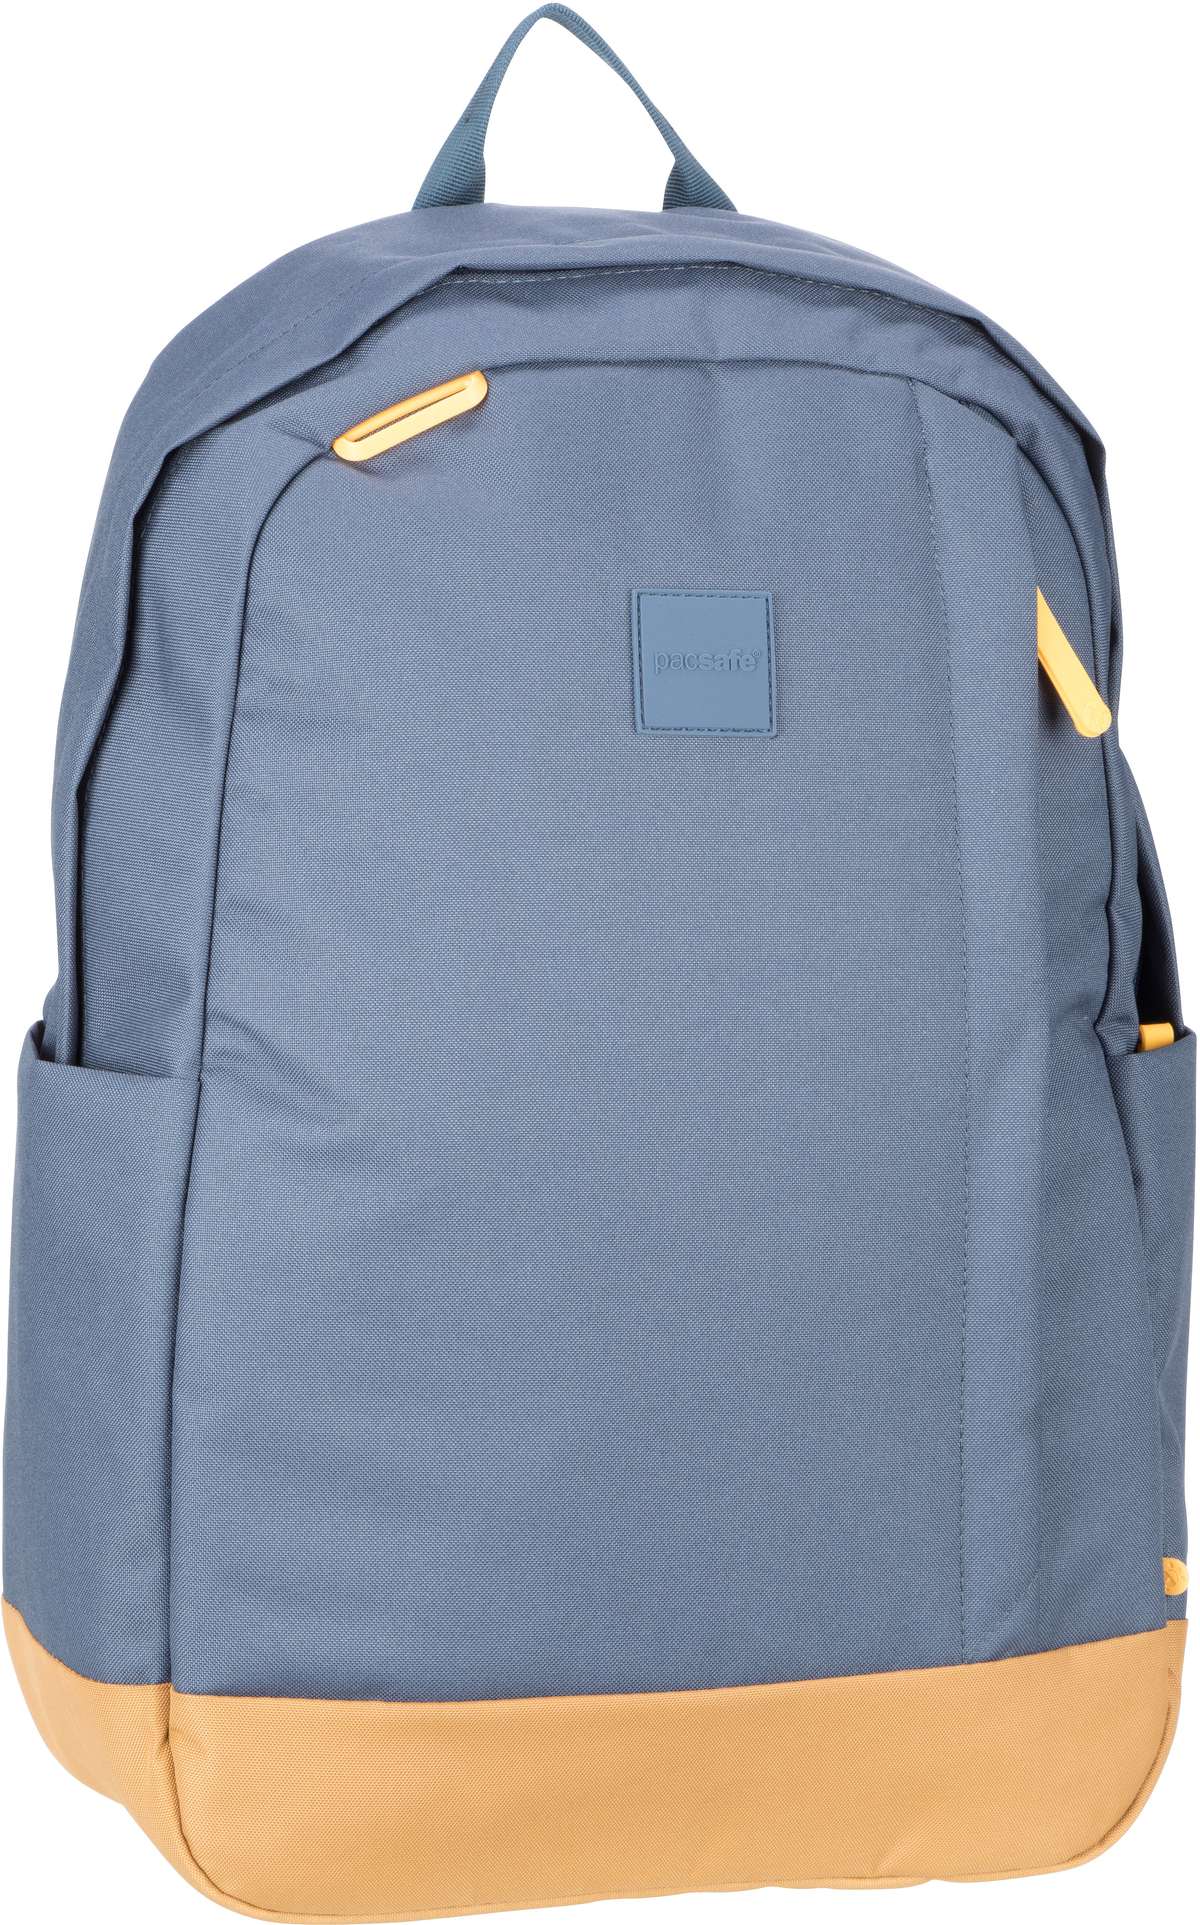 Pacsafe GO 25L Backpack  in Blau (25 Liter), Rucksack / Backpack